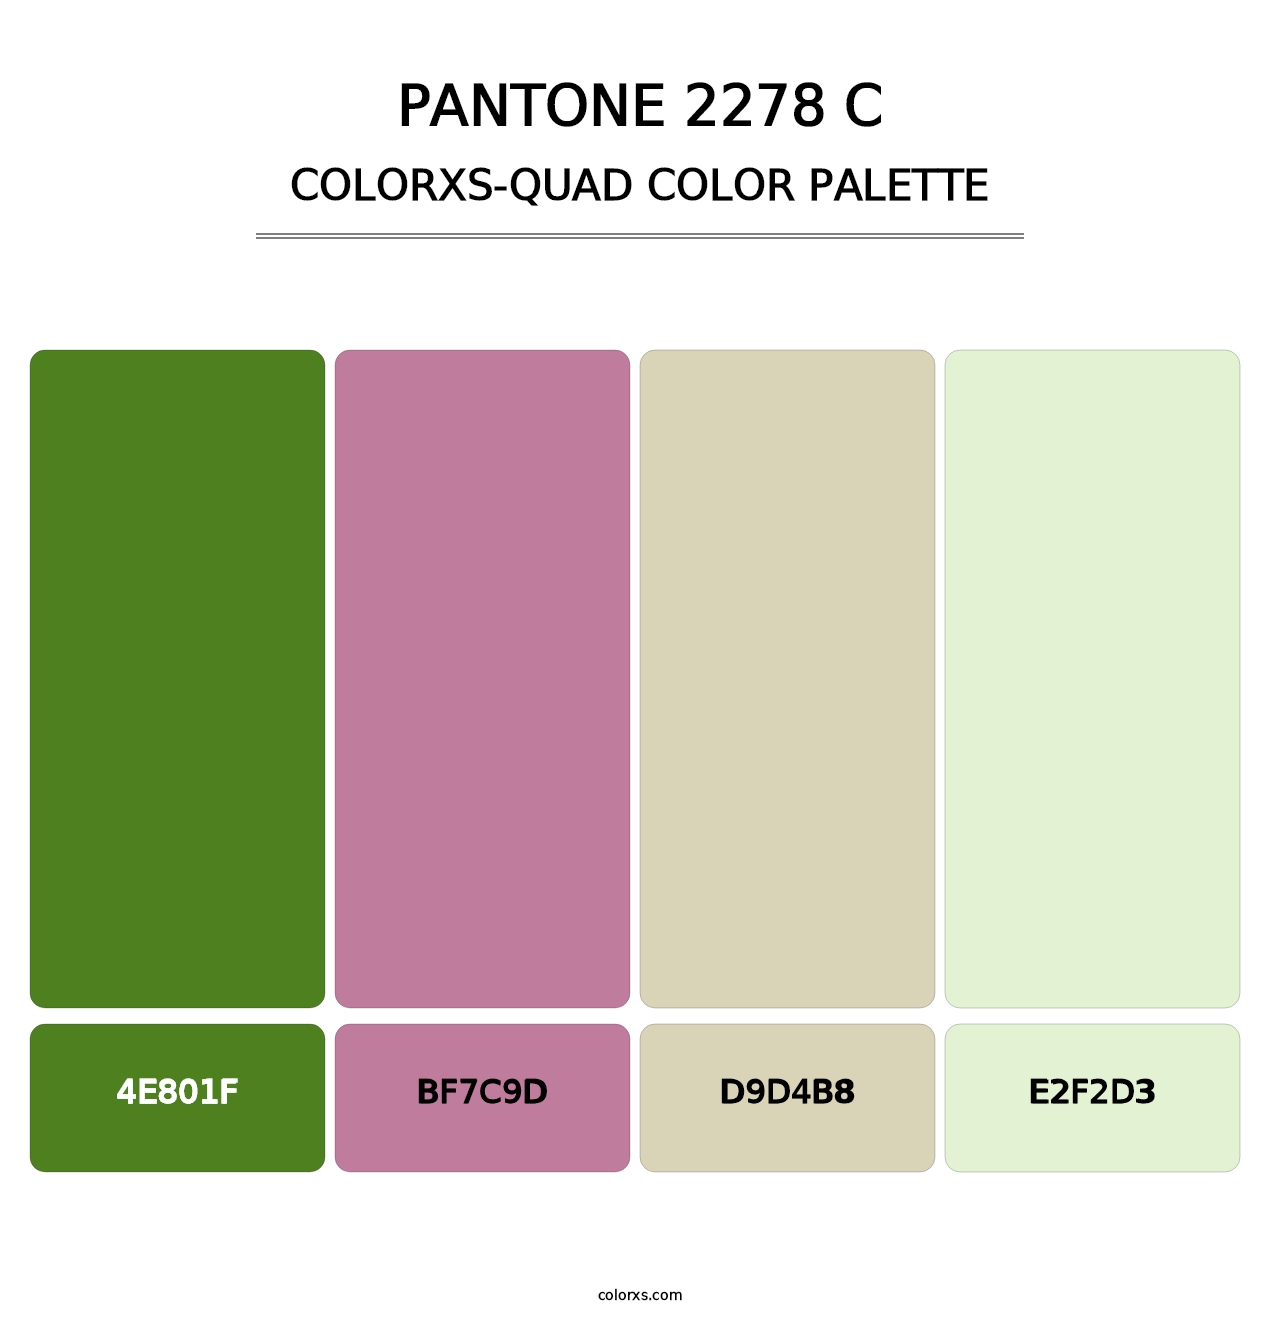 PANTONE 2278 C - Colorxs Quad Palette